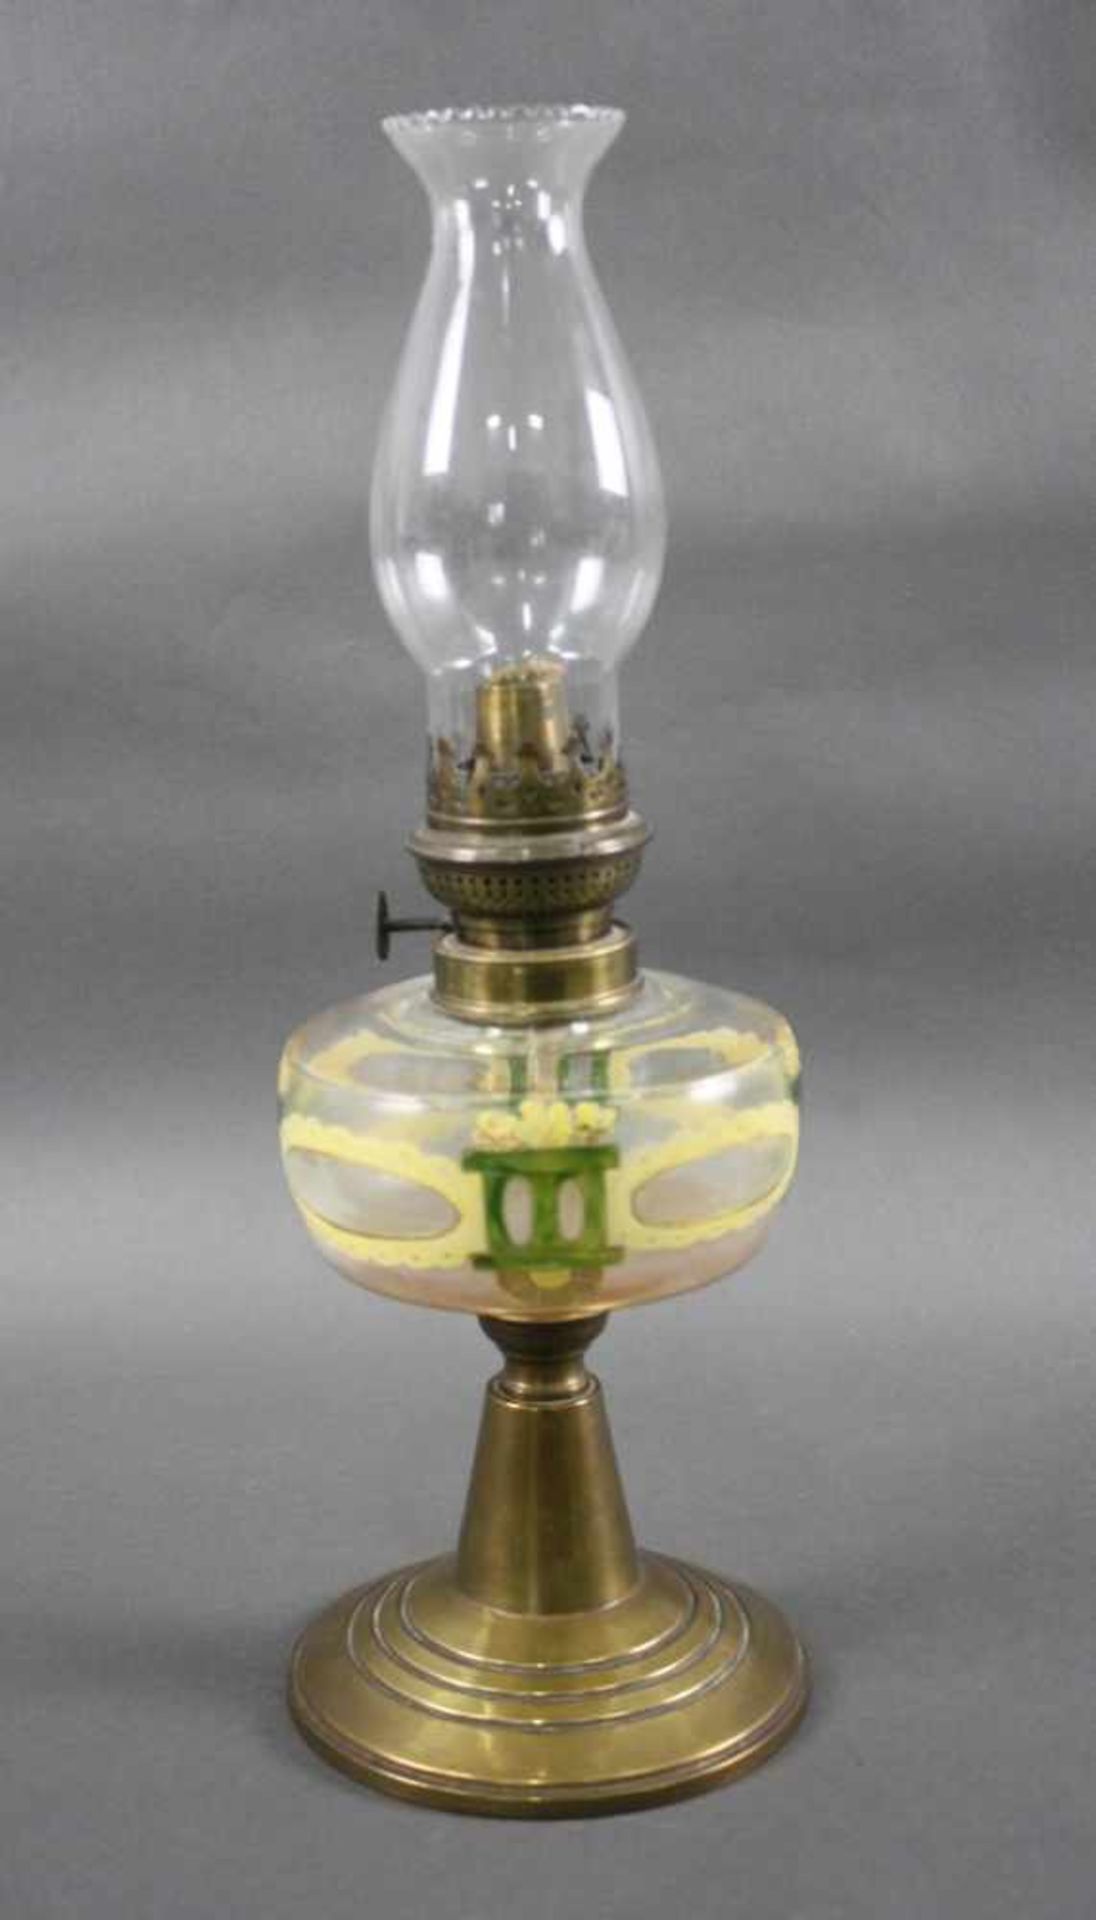 Petroleum-Tischlampe JugendstilMessing/Glas, von Hand bemalter Glasbehälter mit Jugendstilmotiv